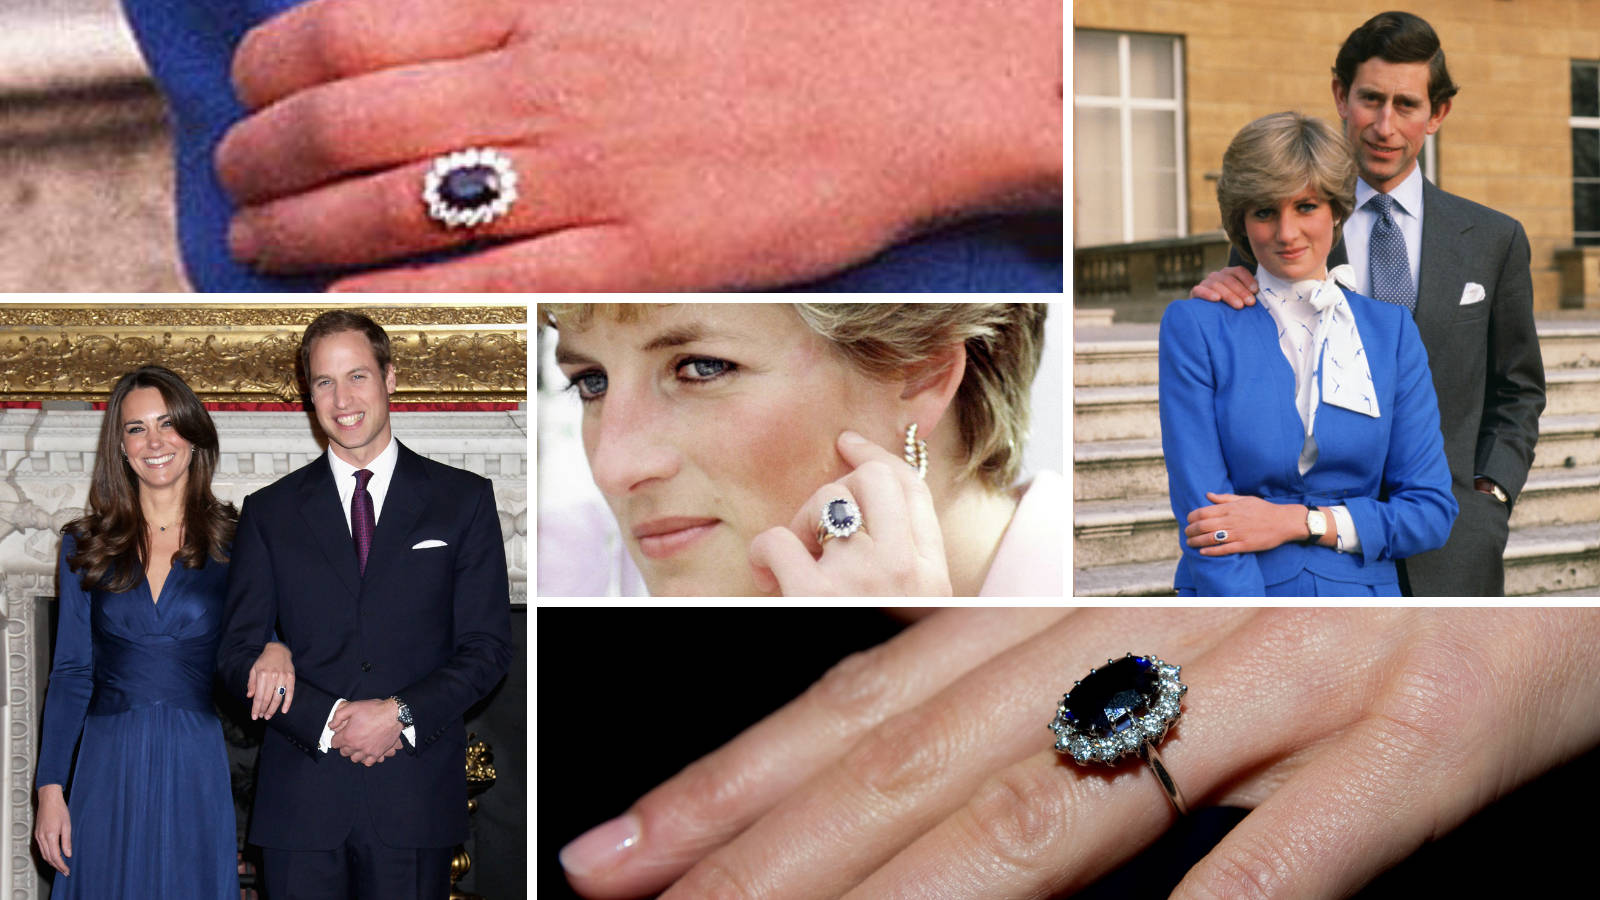 كلتاهما حصلت على خاتم الخطبة الملكي الشهير المرصع بالياقوت الأزرق والماس